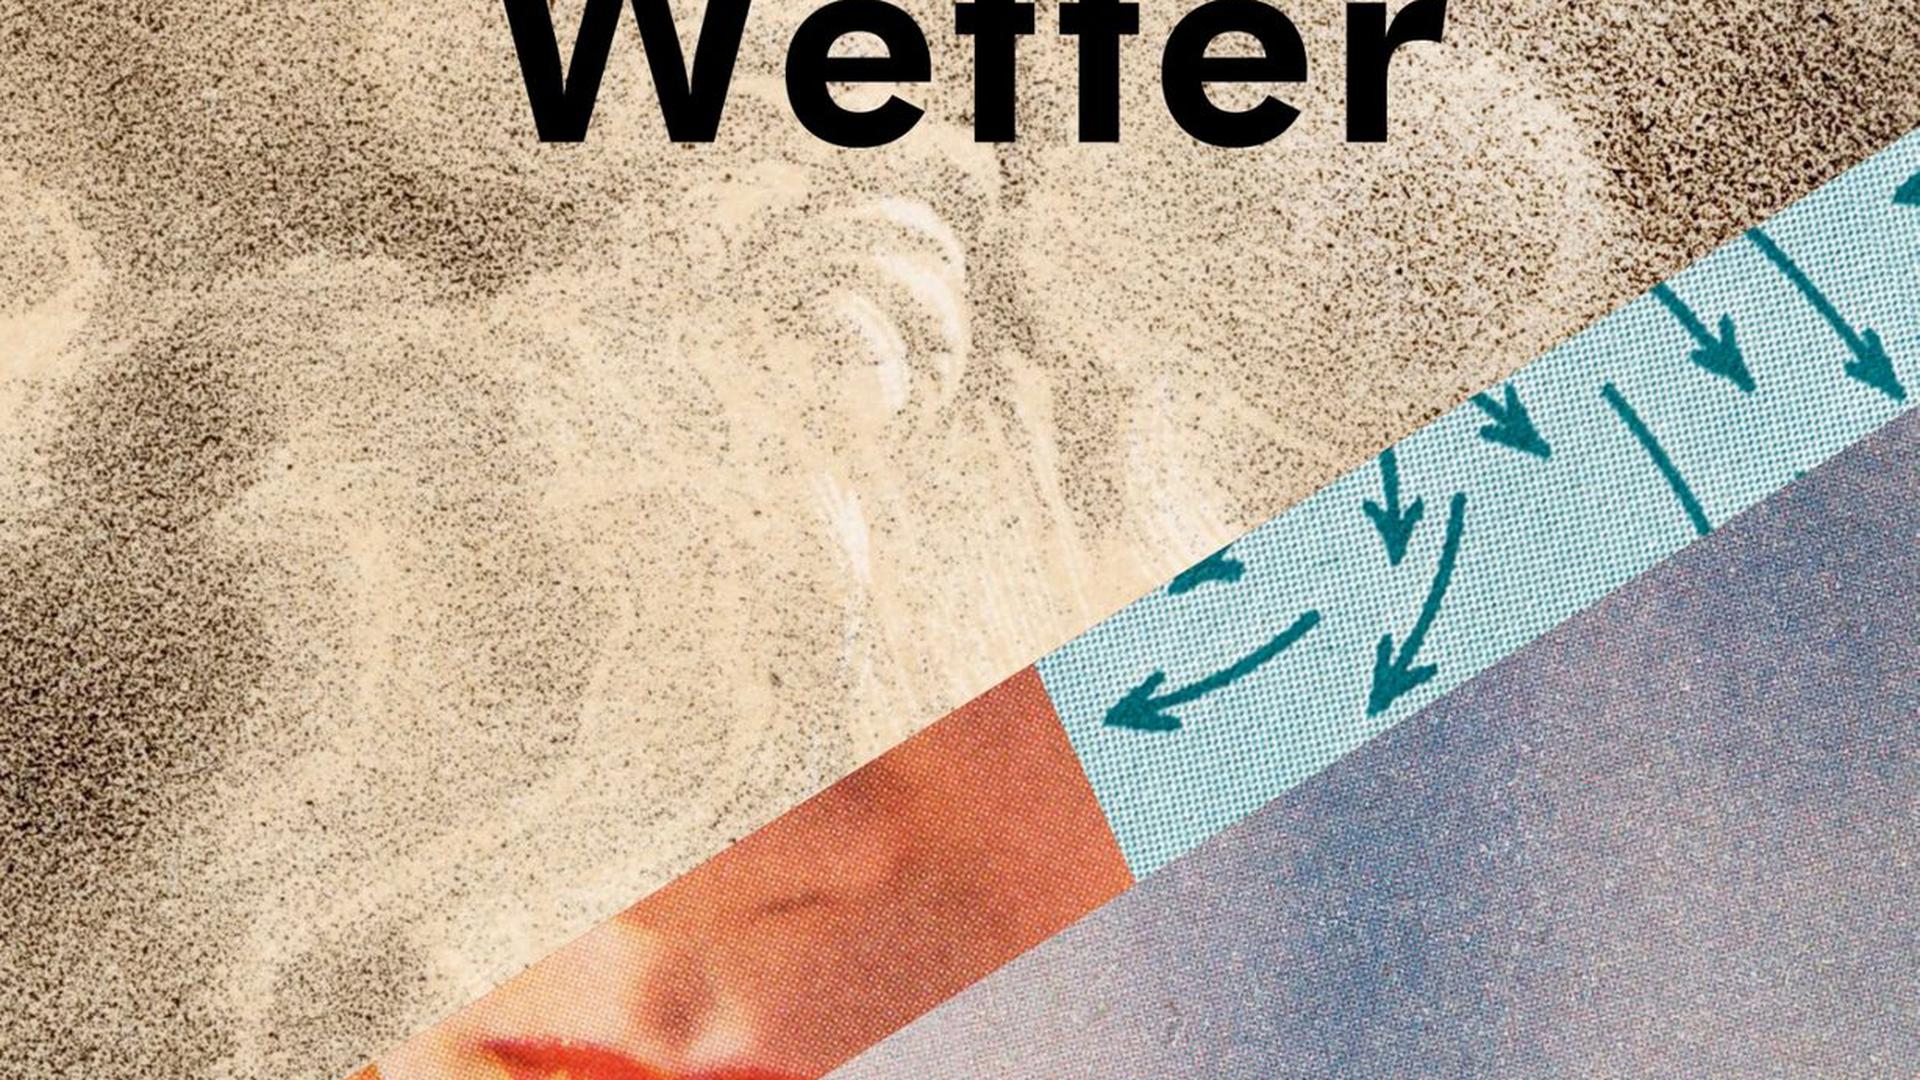 Die Literatur entdeckt den Klimawandel für sich. Zum Beispiel im neuen Roman von Jenny Offill, „Wetter“.